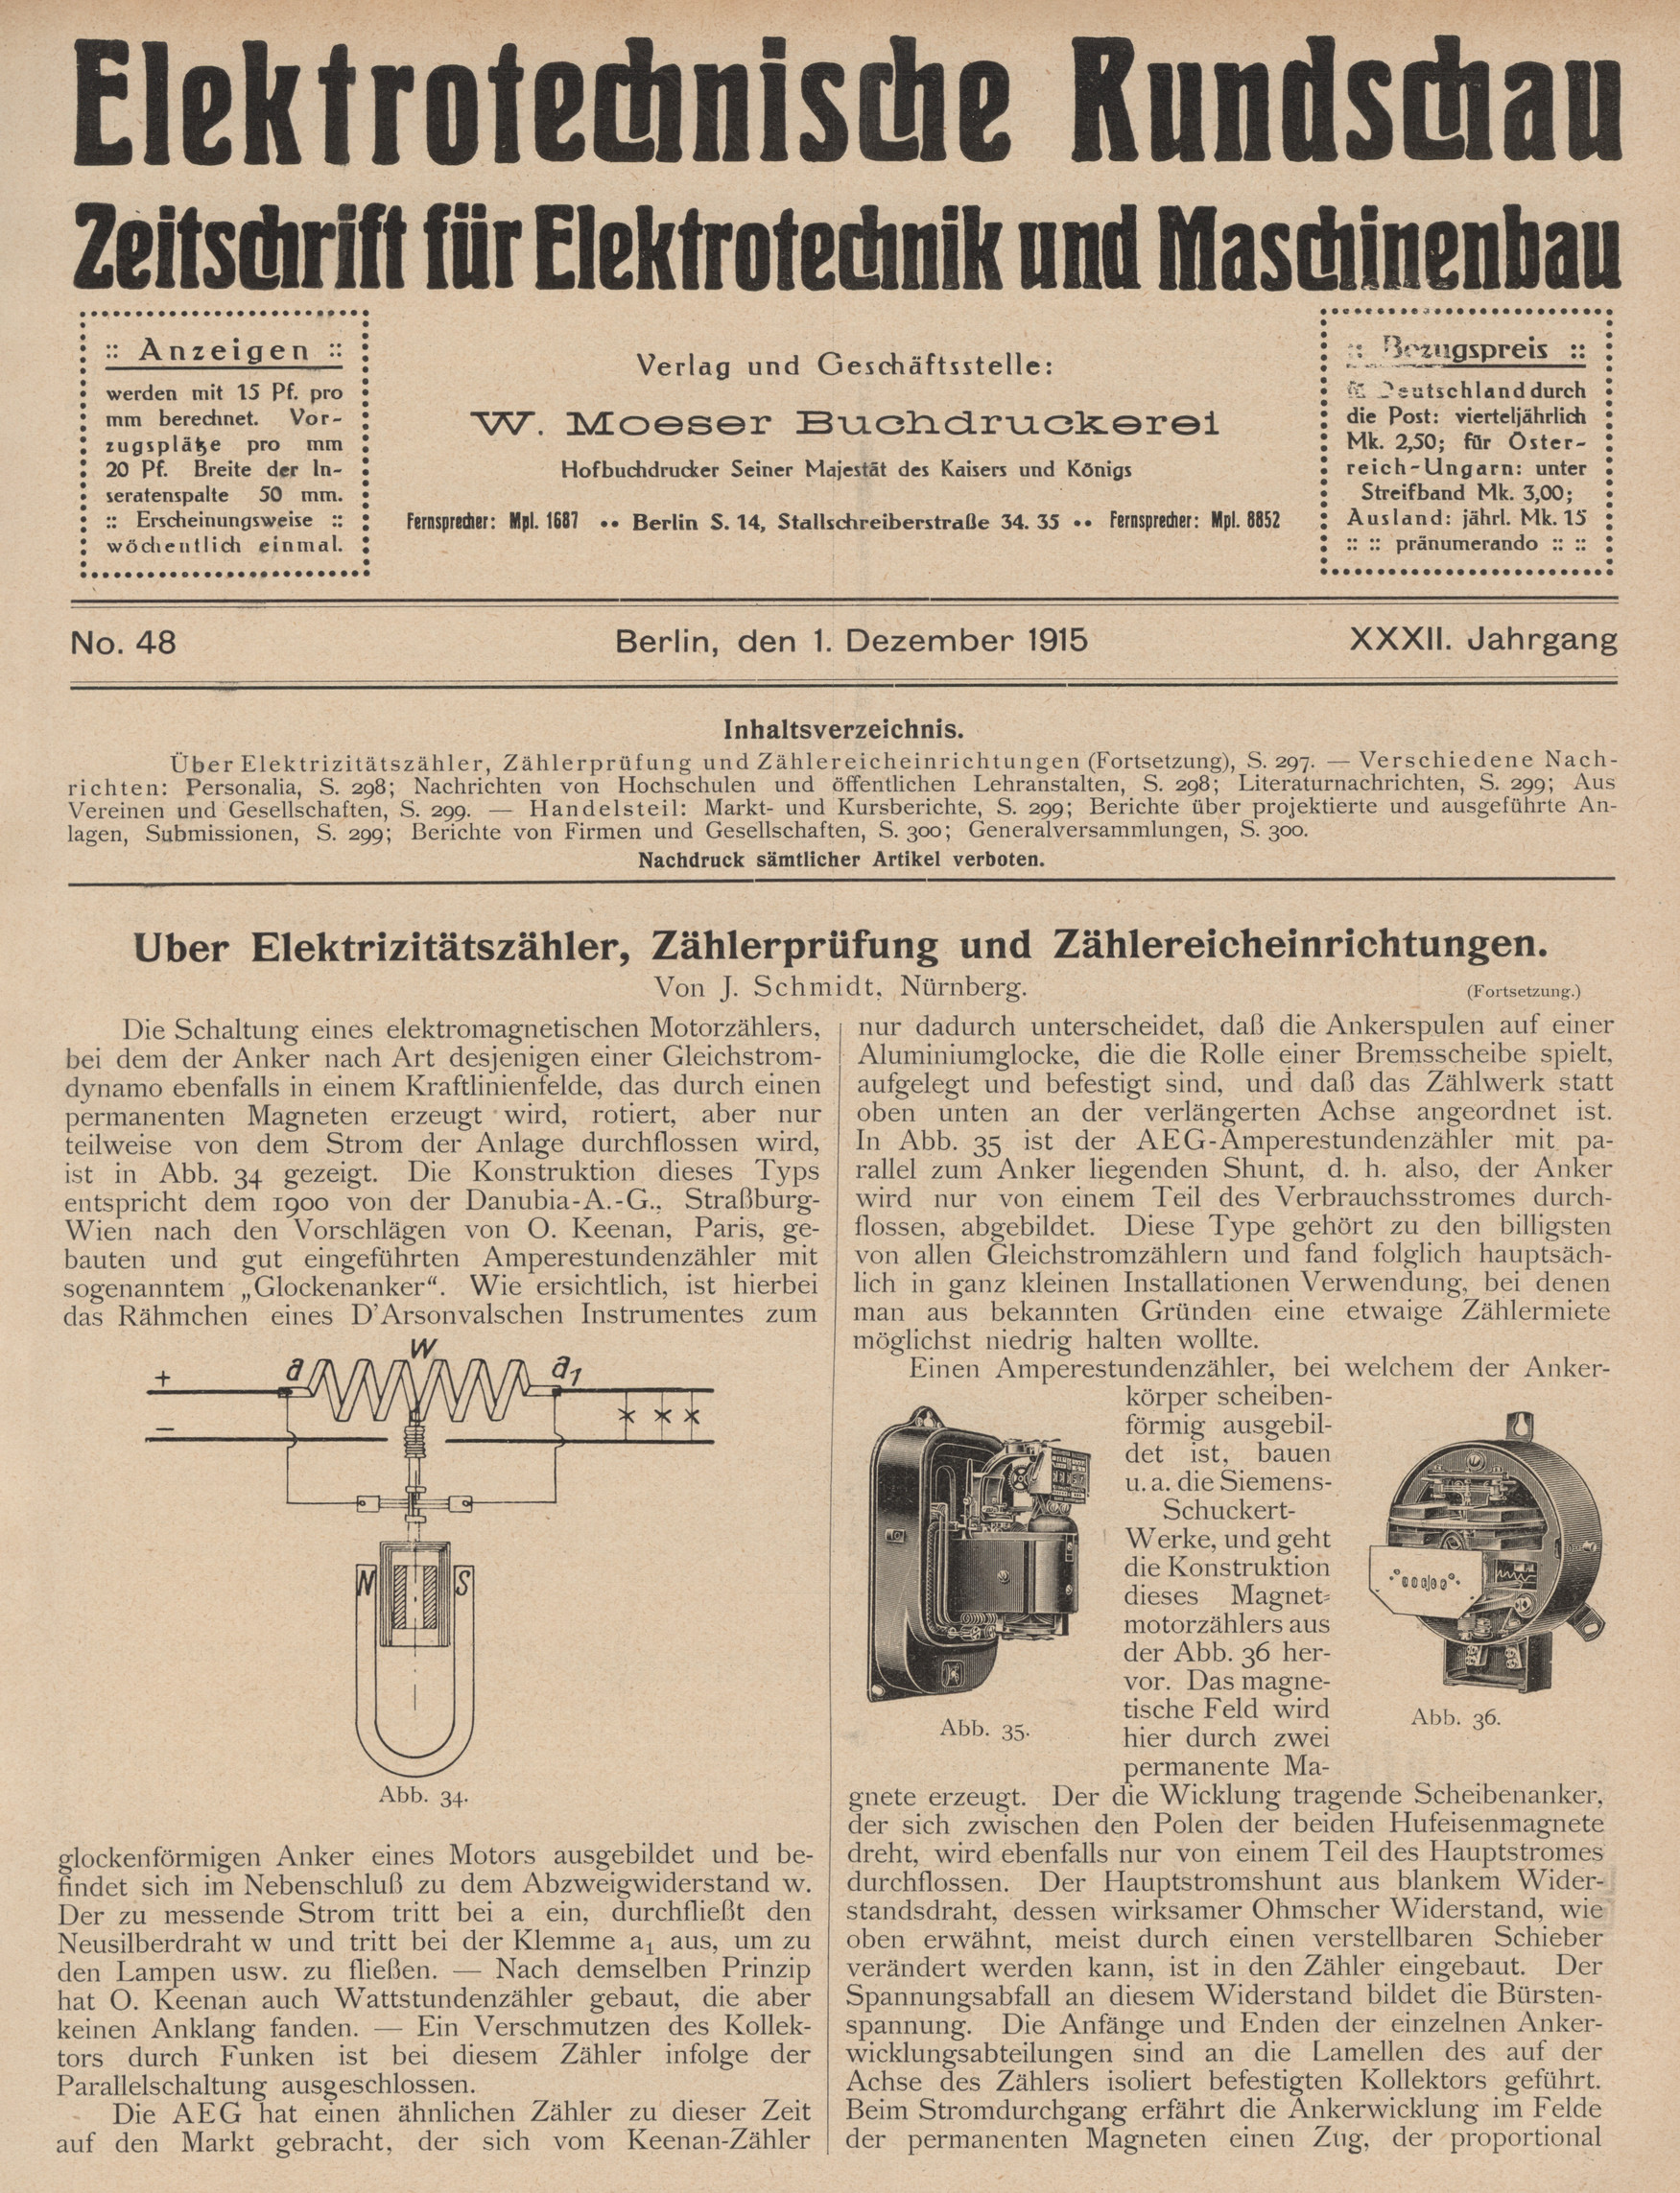 Elektrotechnische Rundschau : Zeitschrift für Elektrotechnik und Maschinenbau + Polytechnische Rundschau, No. 48, XXXII. Jahrgang